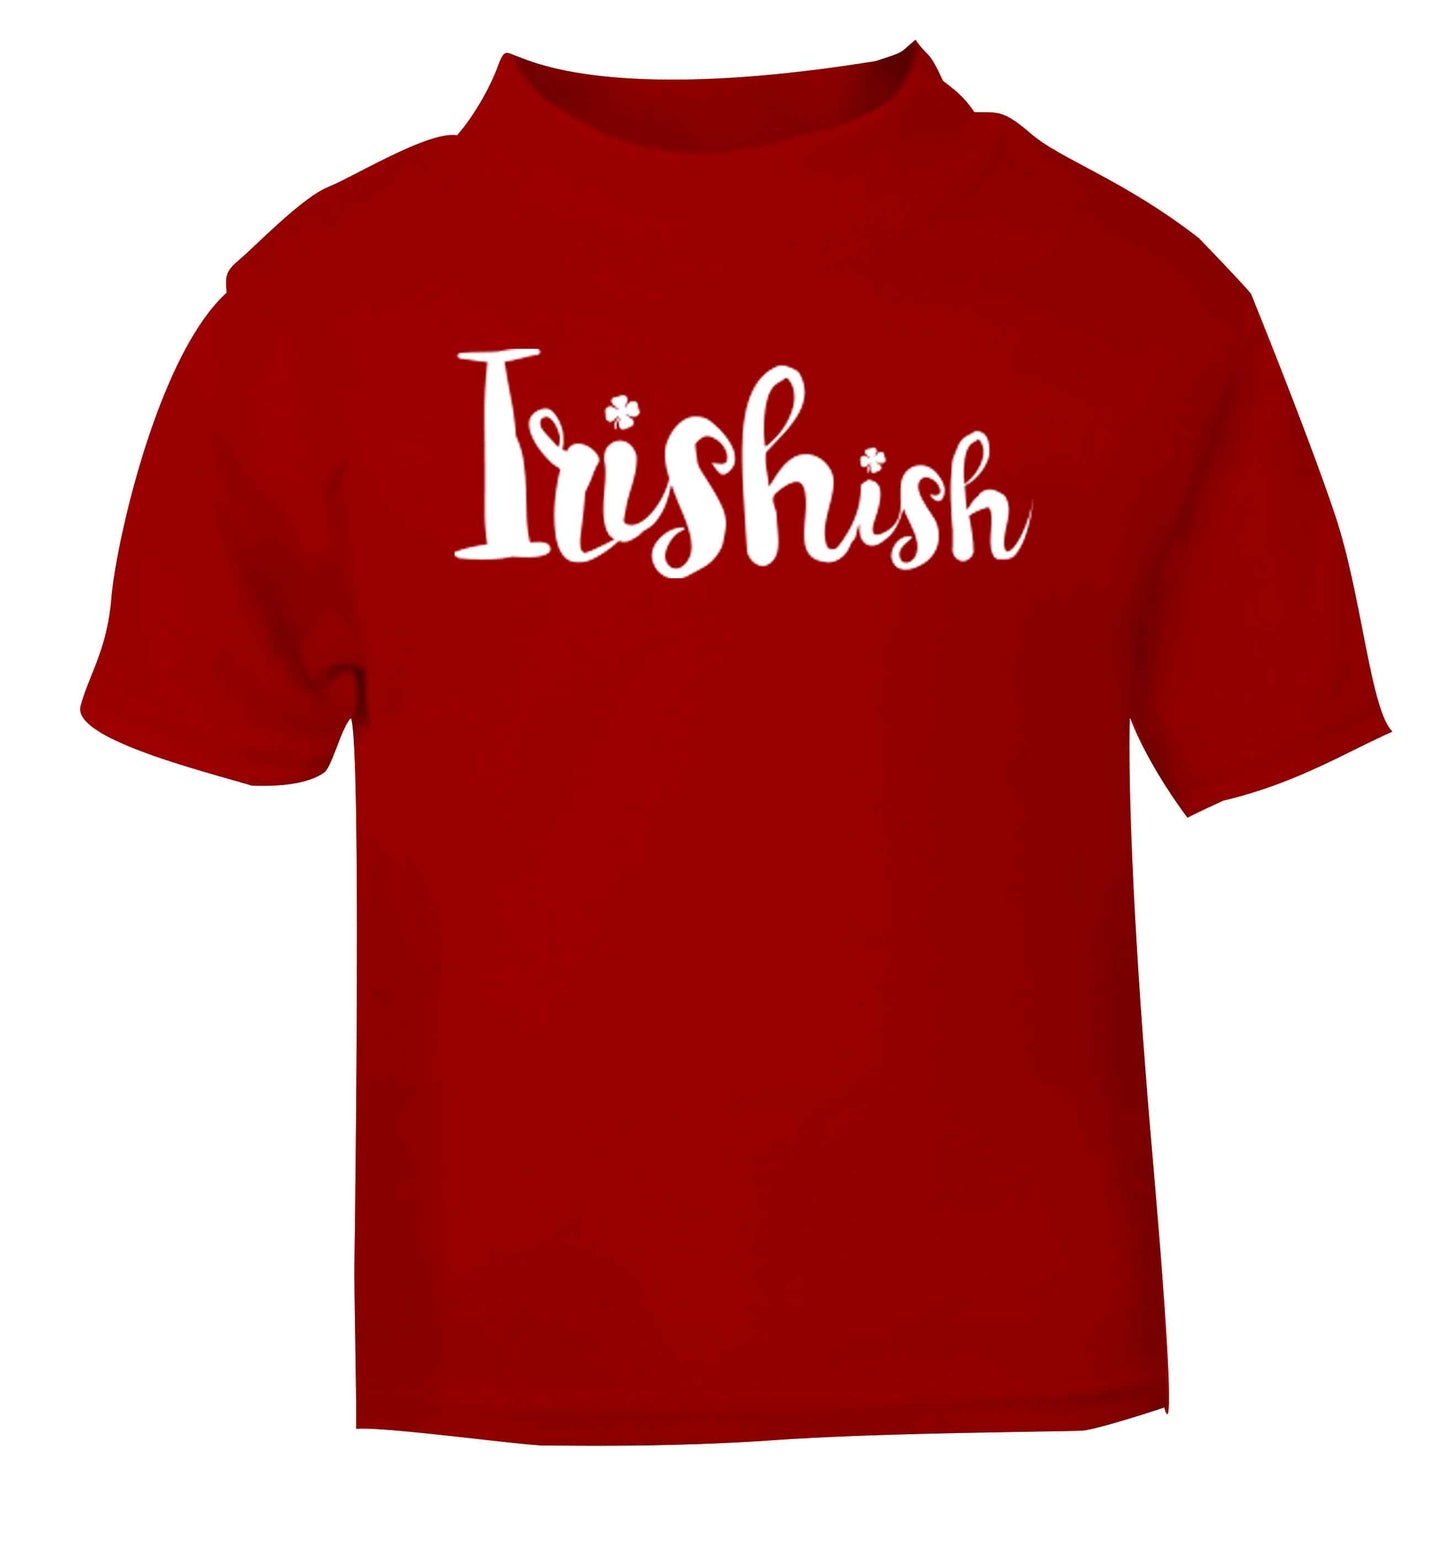 Irishish red baby toddler Tshirt 2 Years